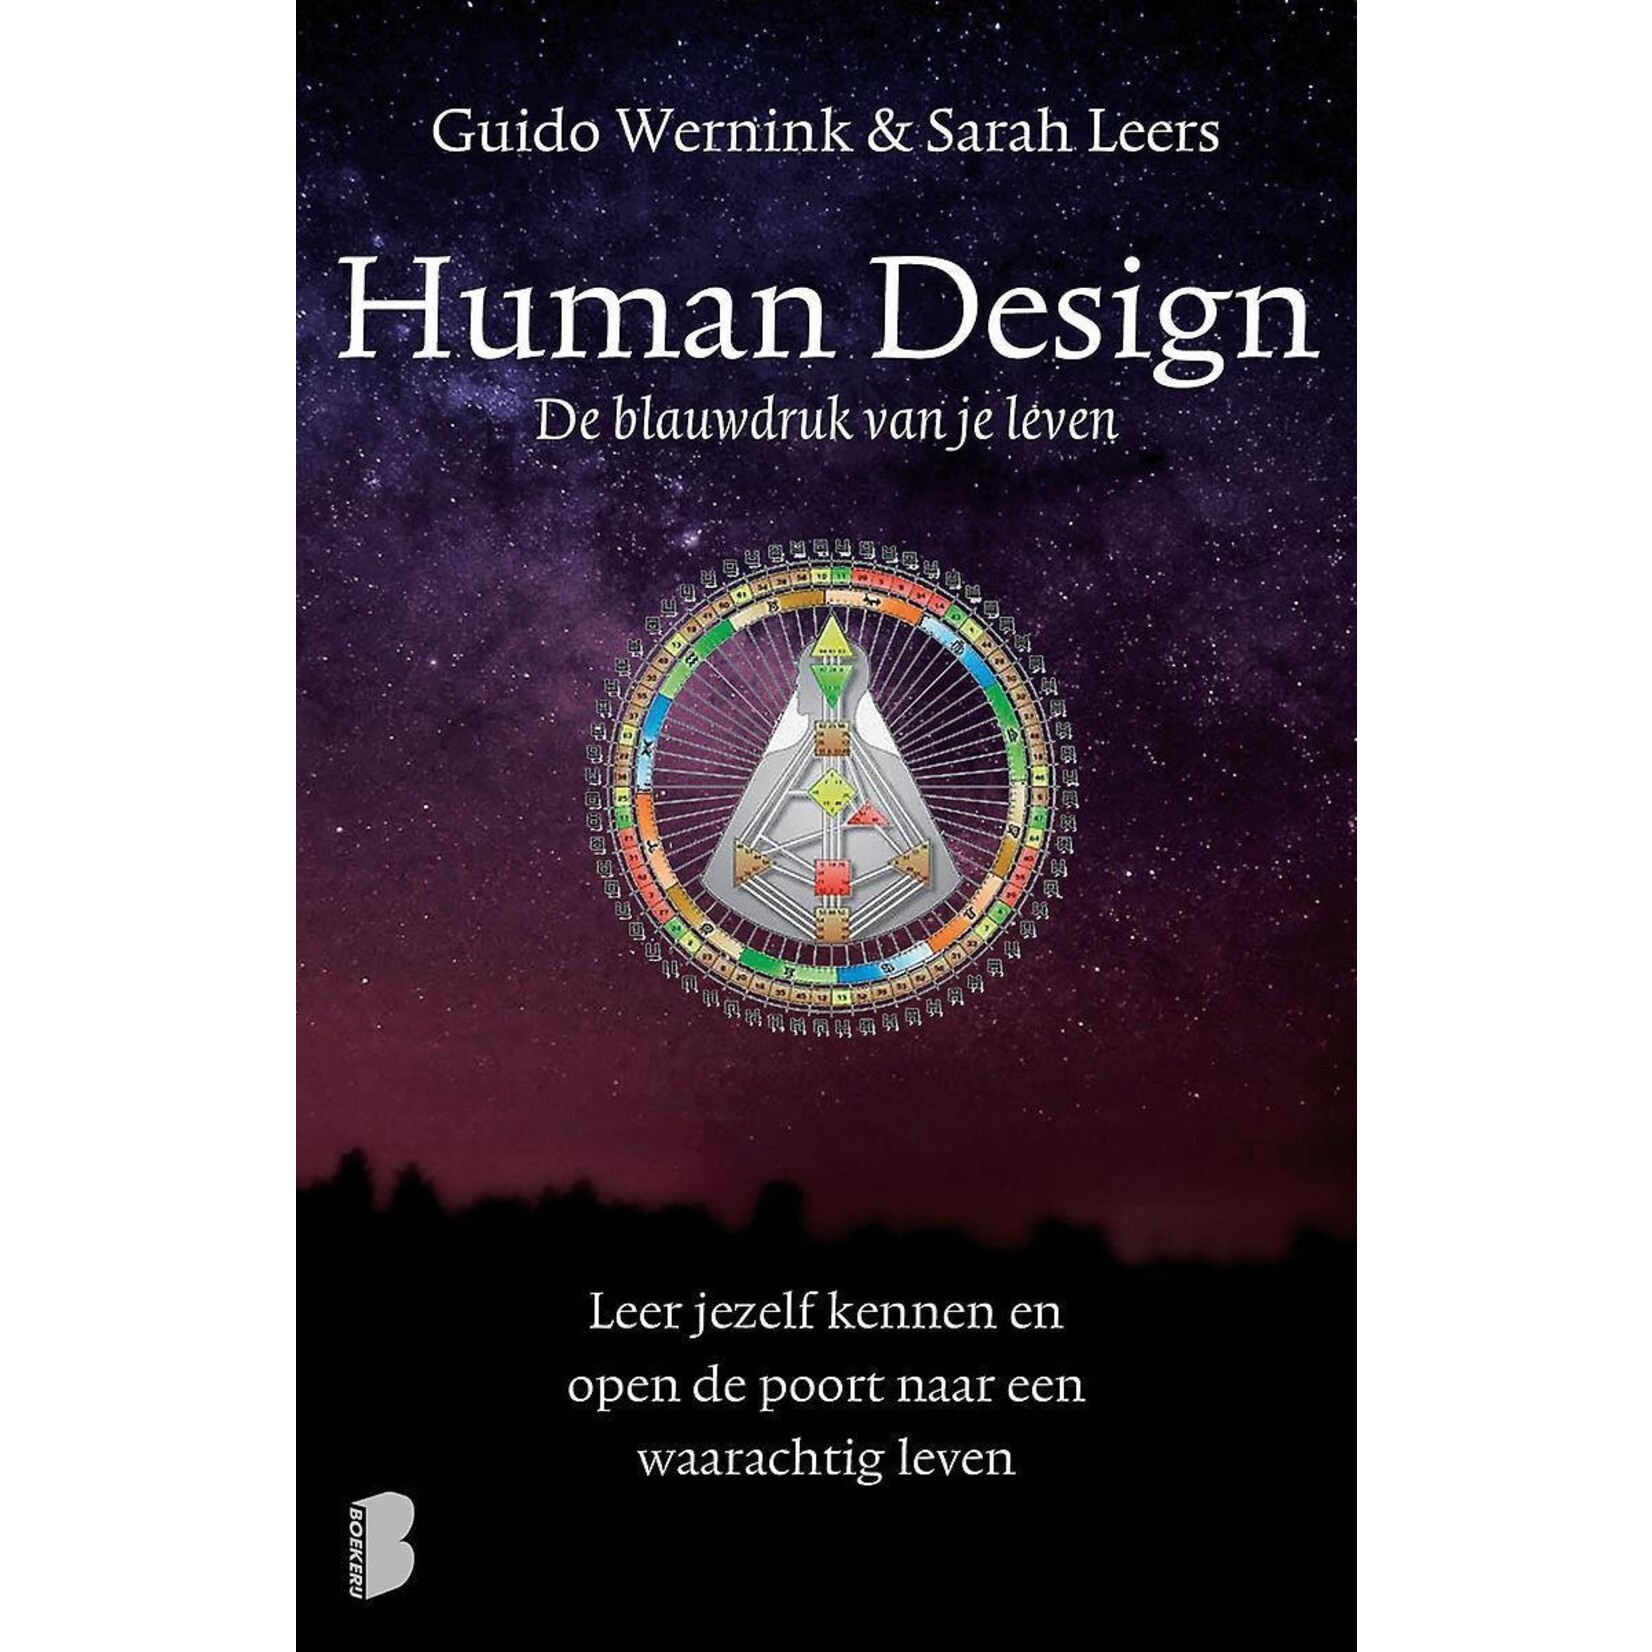 Human design, de blauwdruk van je leven